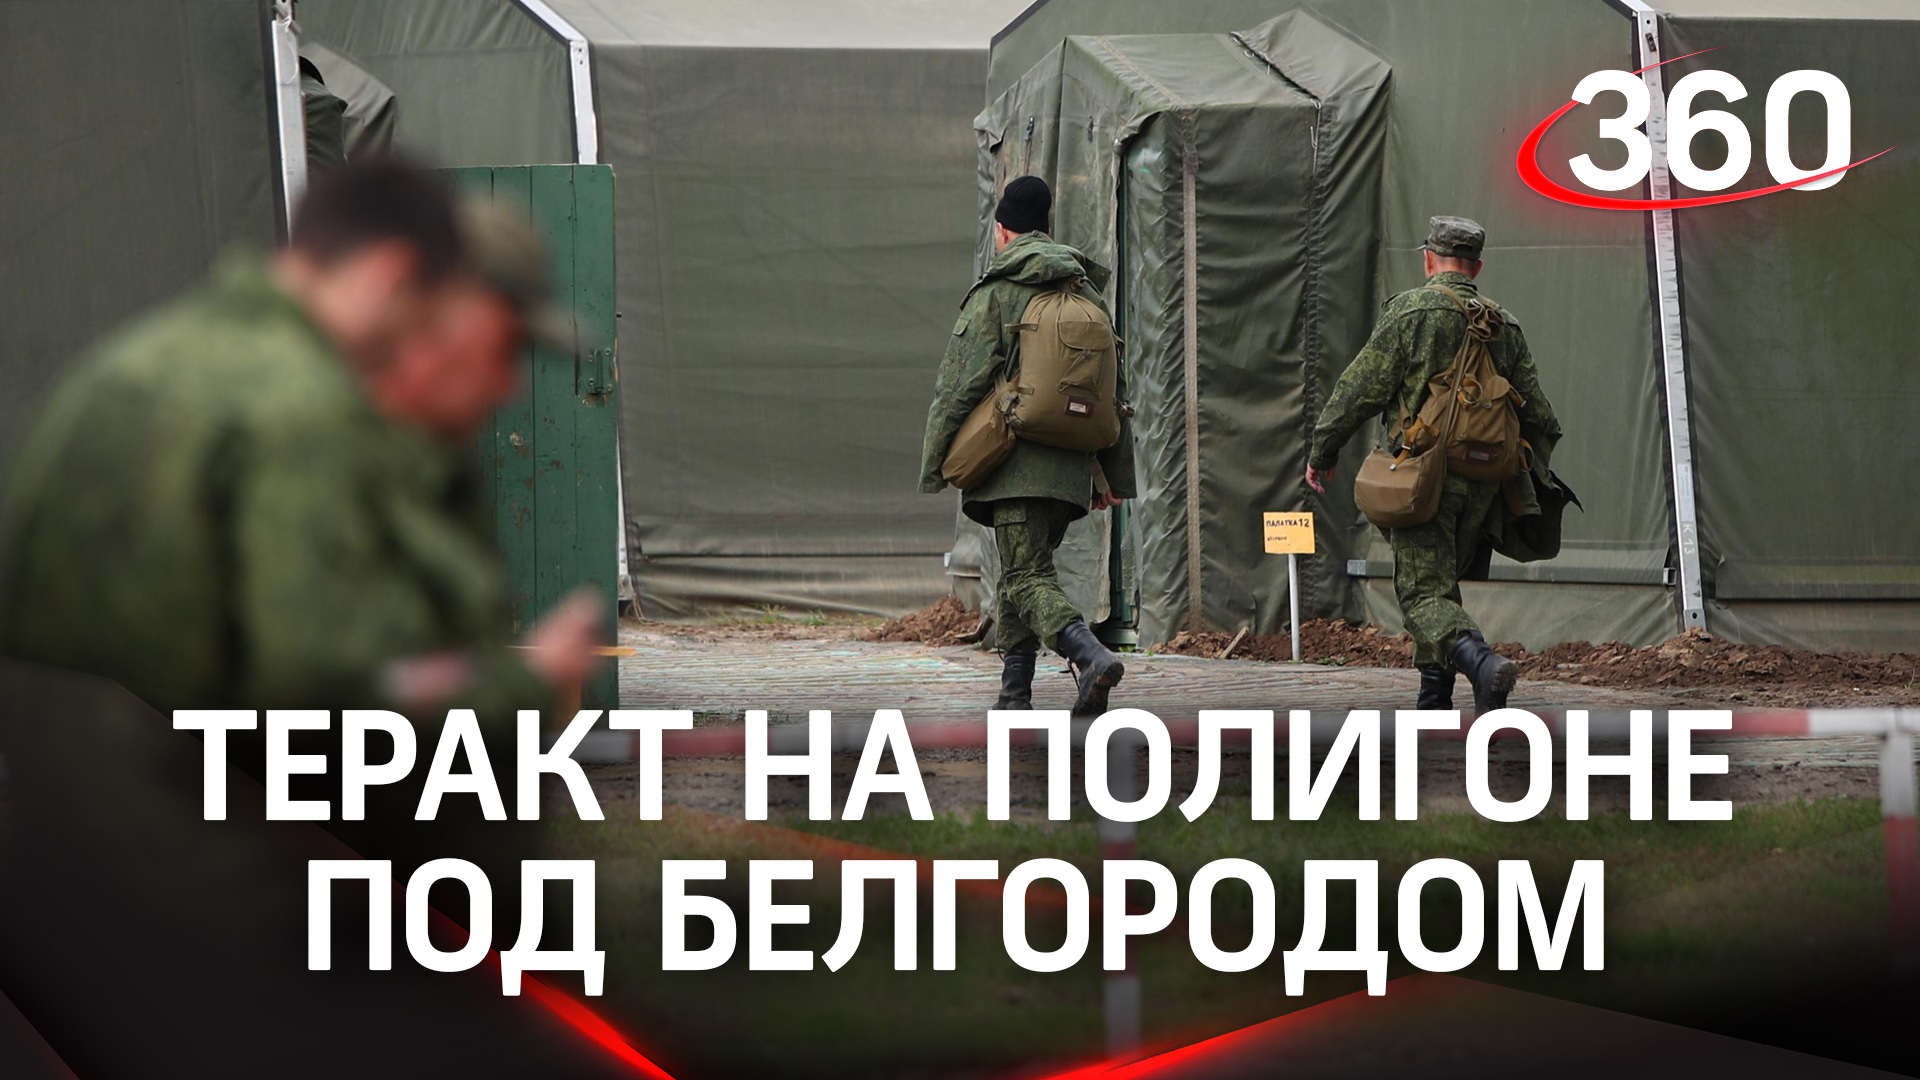 Теракт на полигоне под Белгородом: 11 мобилизованных убиты, 15 ранены. Нападавшие убиты в перестрелк